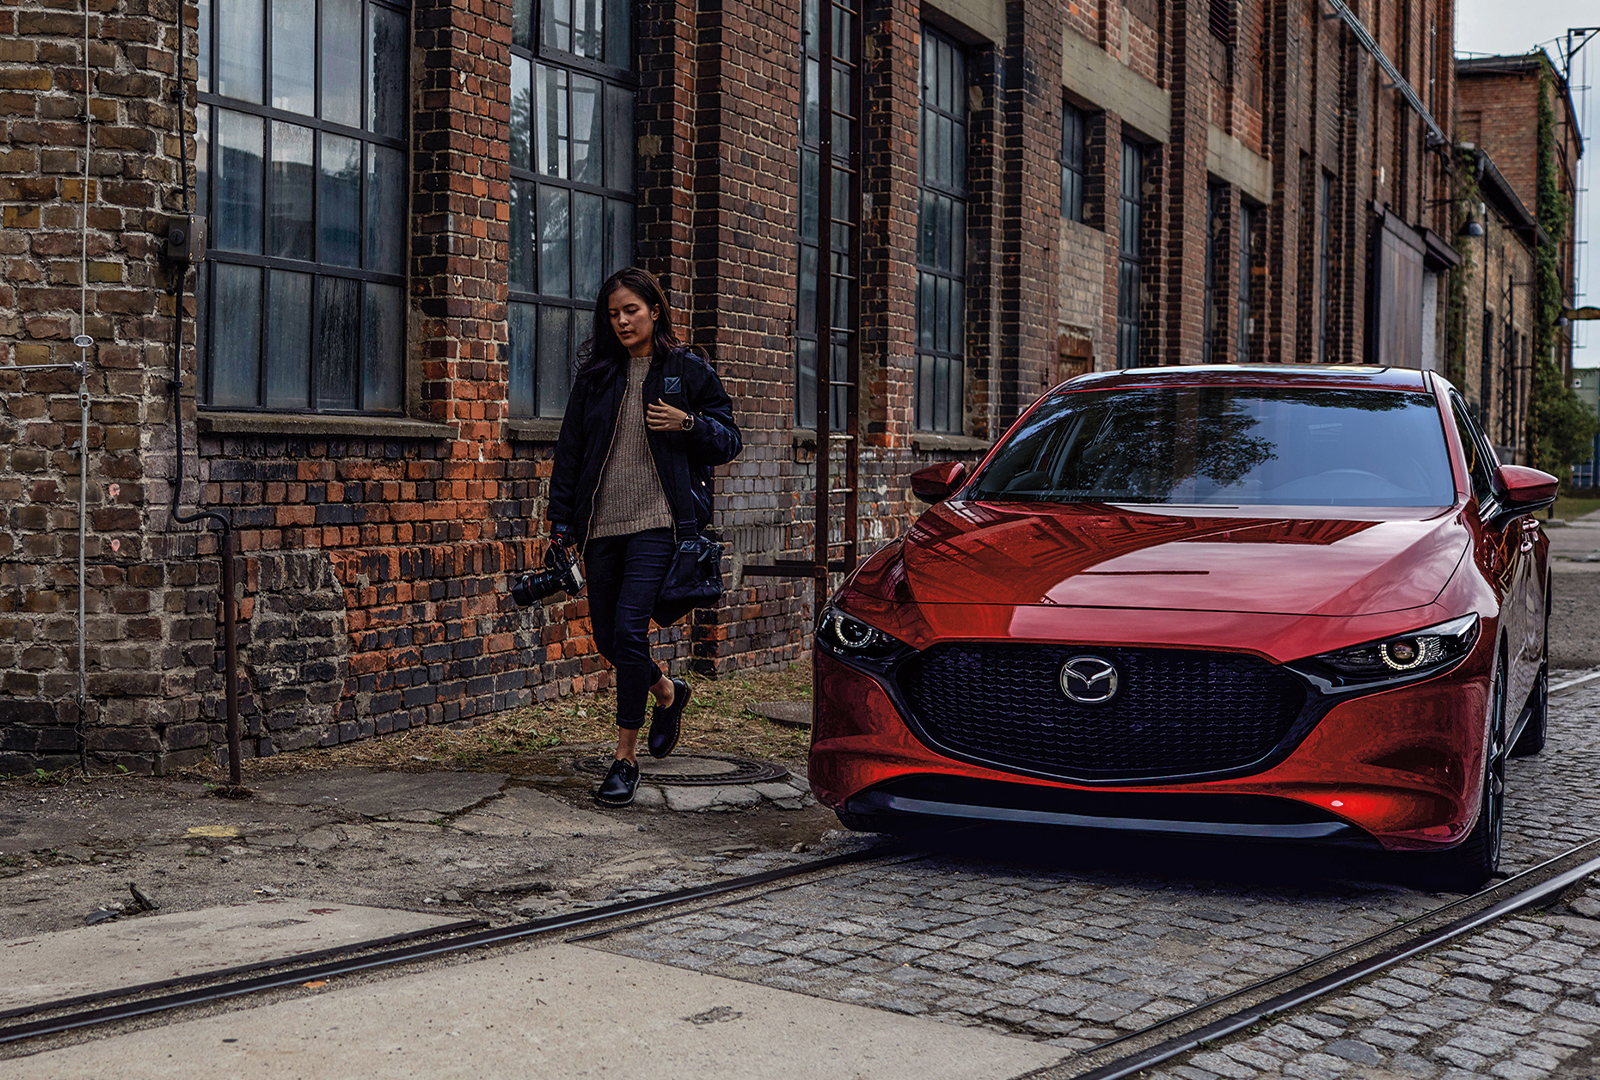 Femme longeant une Mazda3 rouge stationnée sur une rue pavée, devant un entrepôt couleur brique